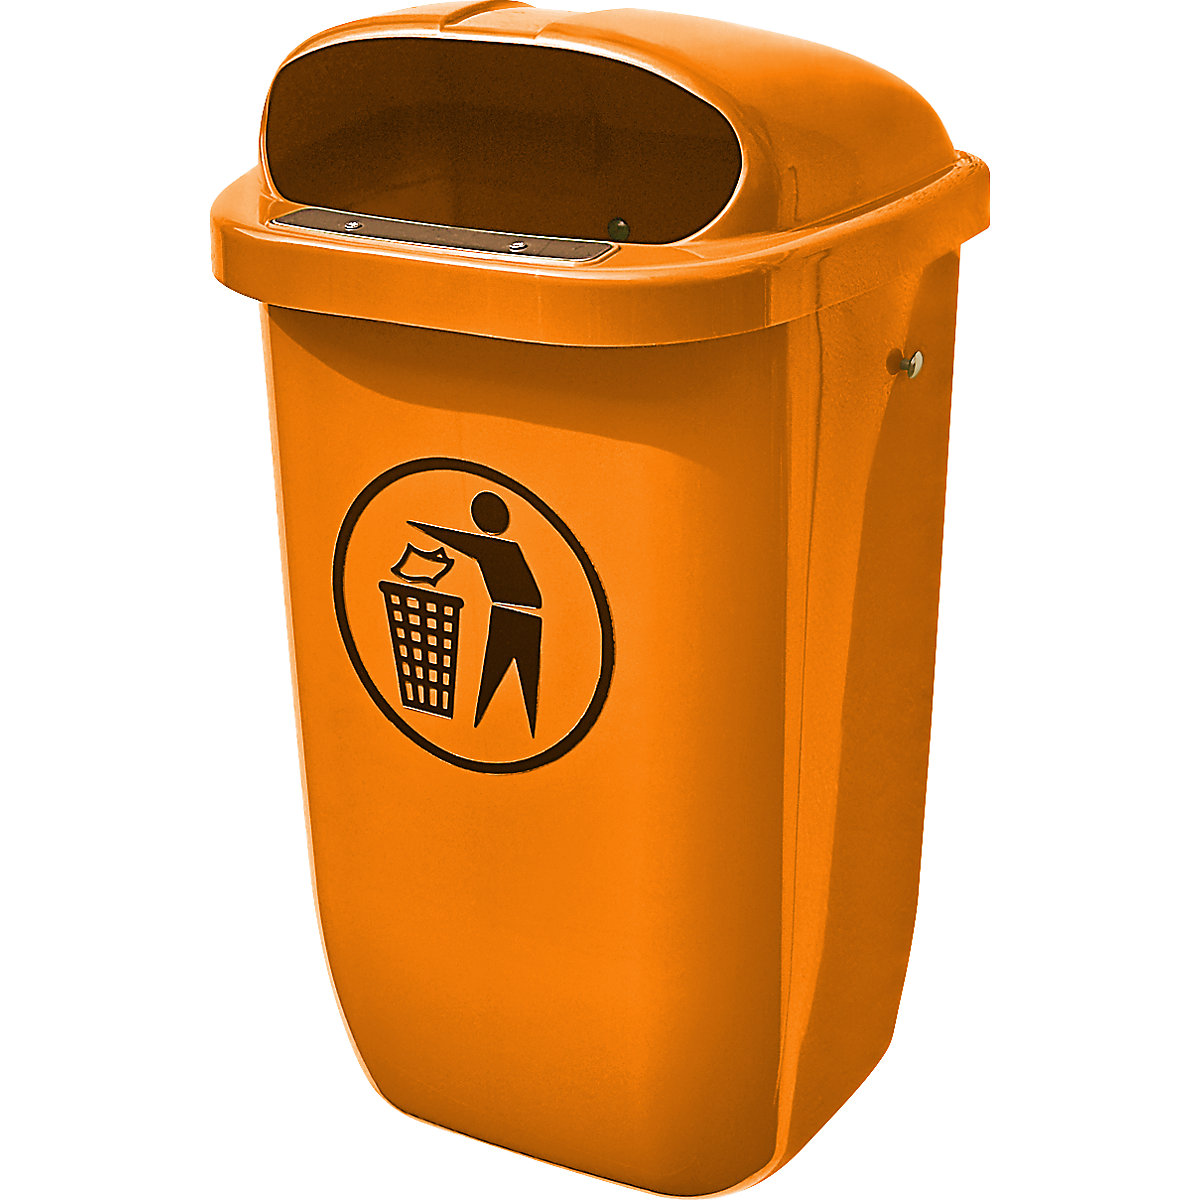 Abfallbehälter aus Kunststoff, Volumen 50 l, orange